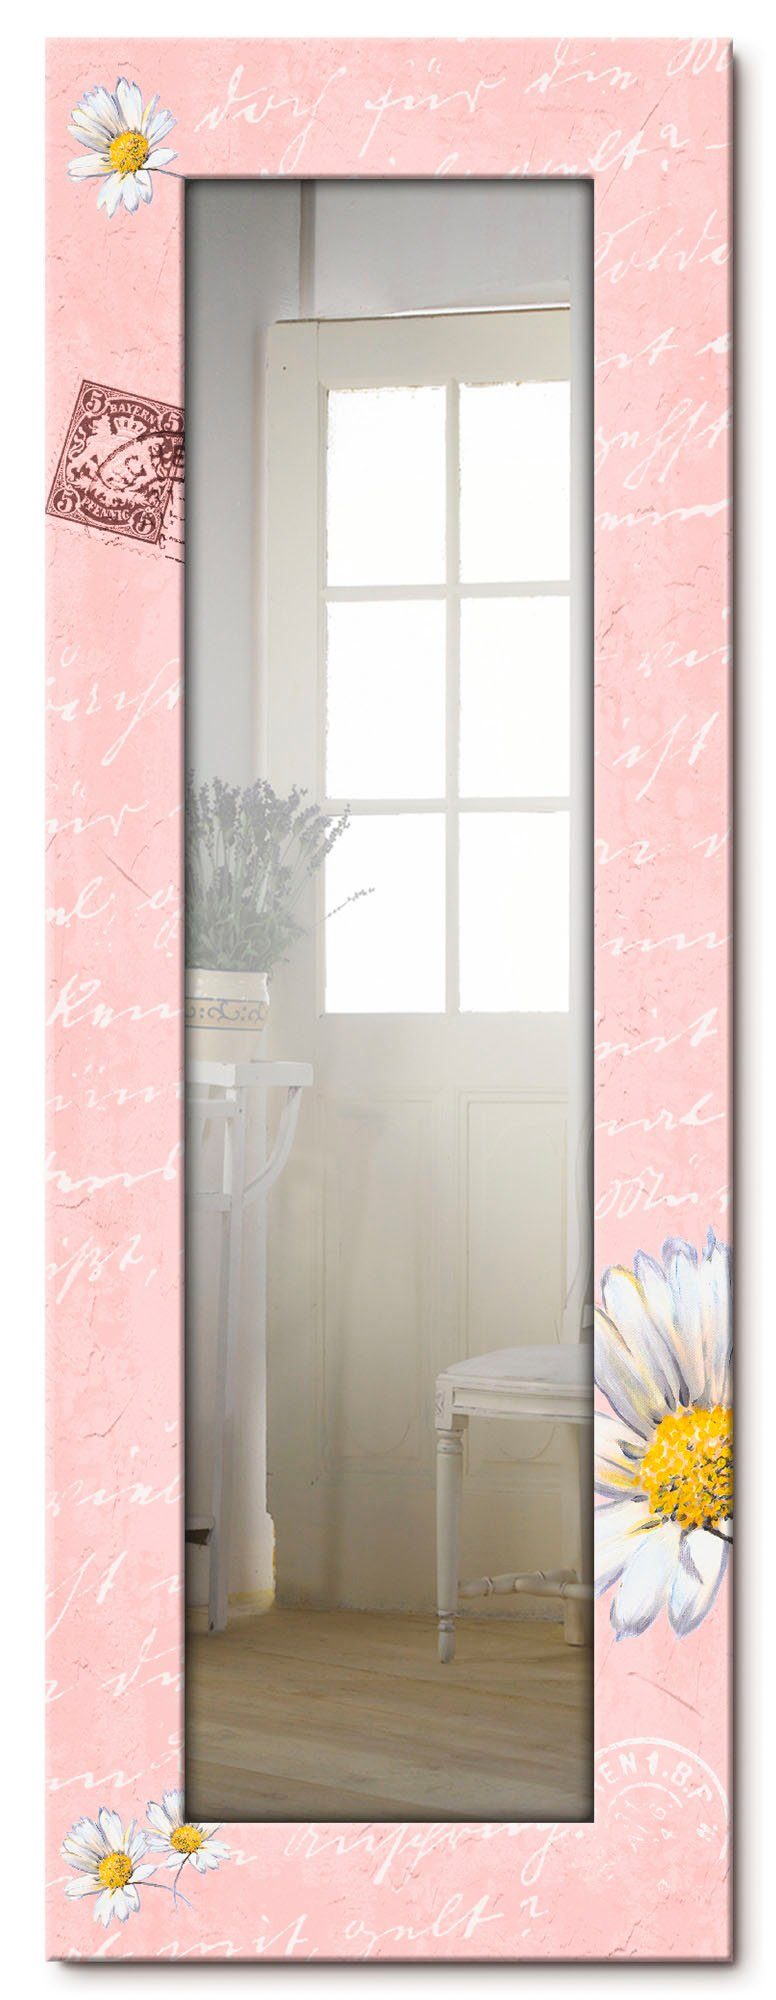 Artland Dekospiegel Gänseblümchen auf rosa, gerahmter Ganzkörperspiegel, Wandspiegel, mit Motivrahmen, Landhaus